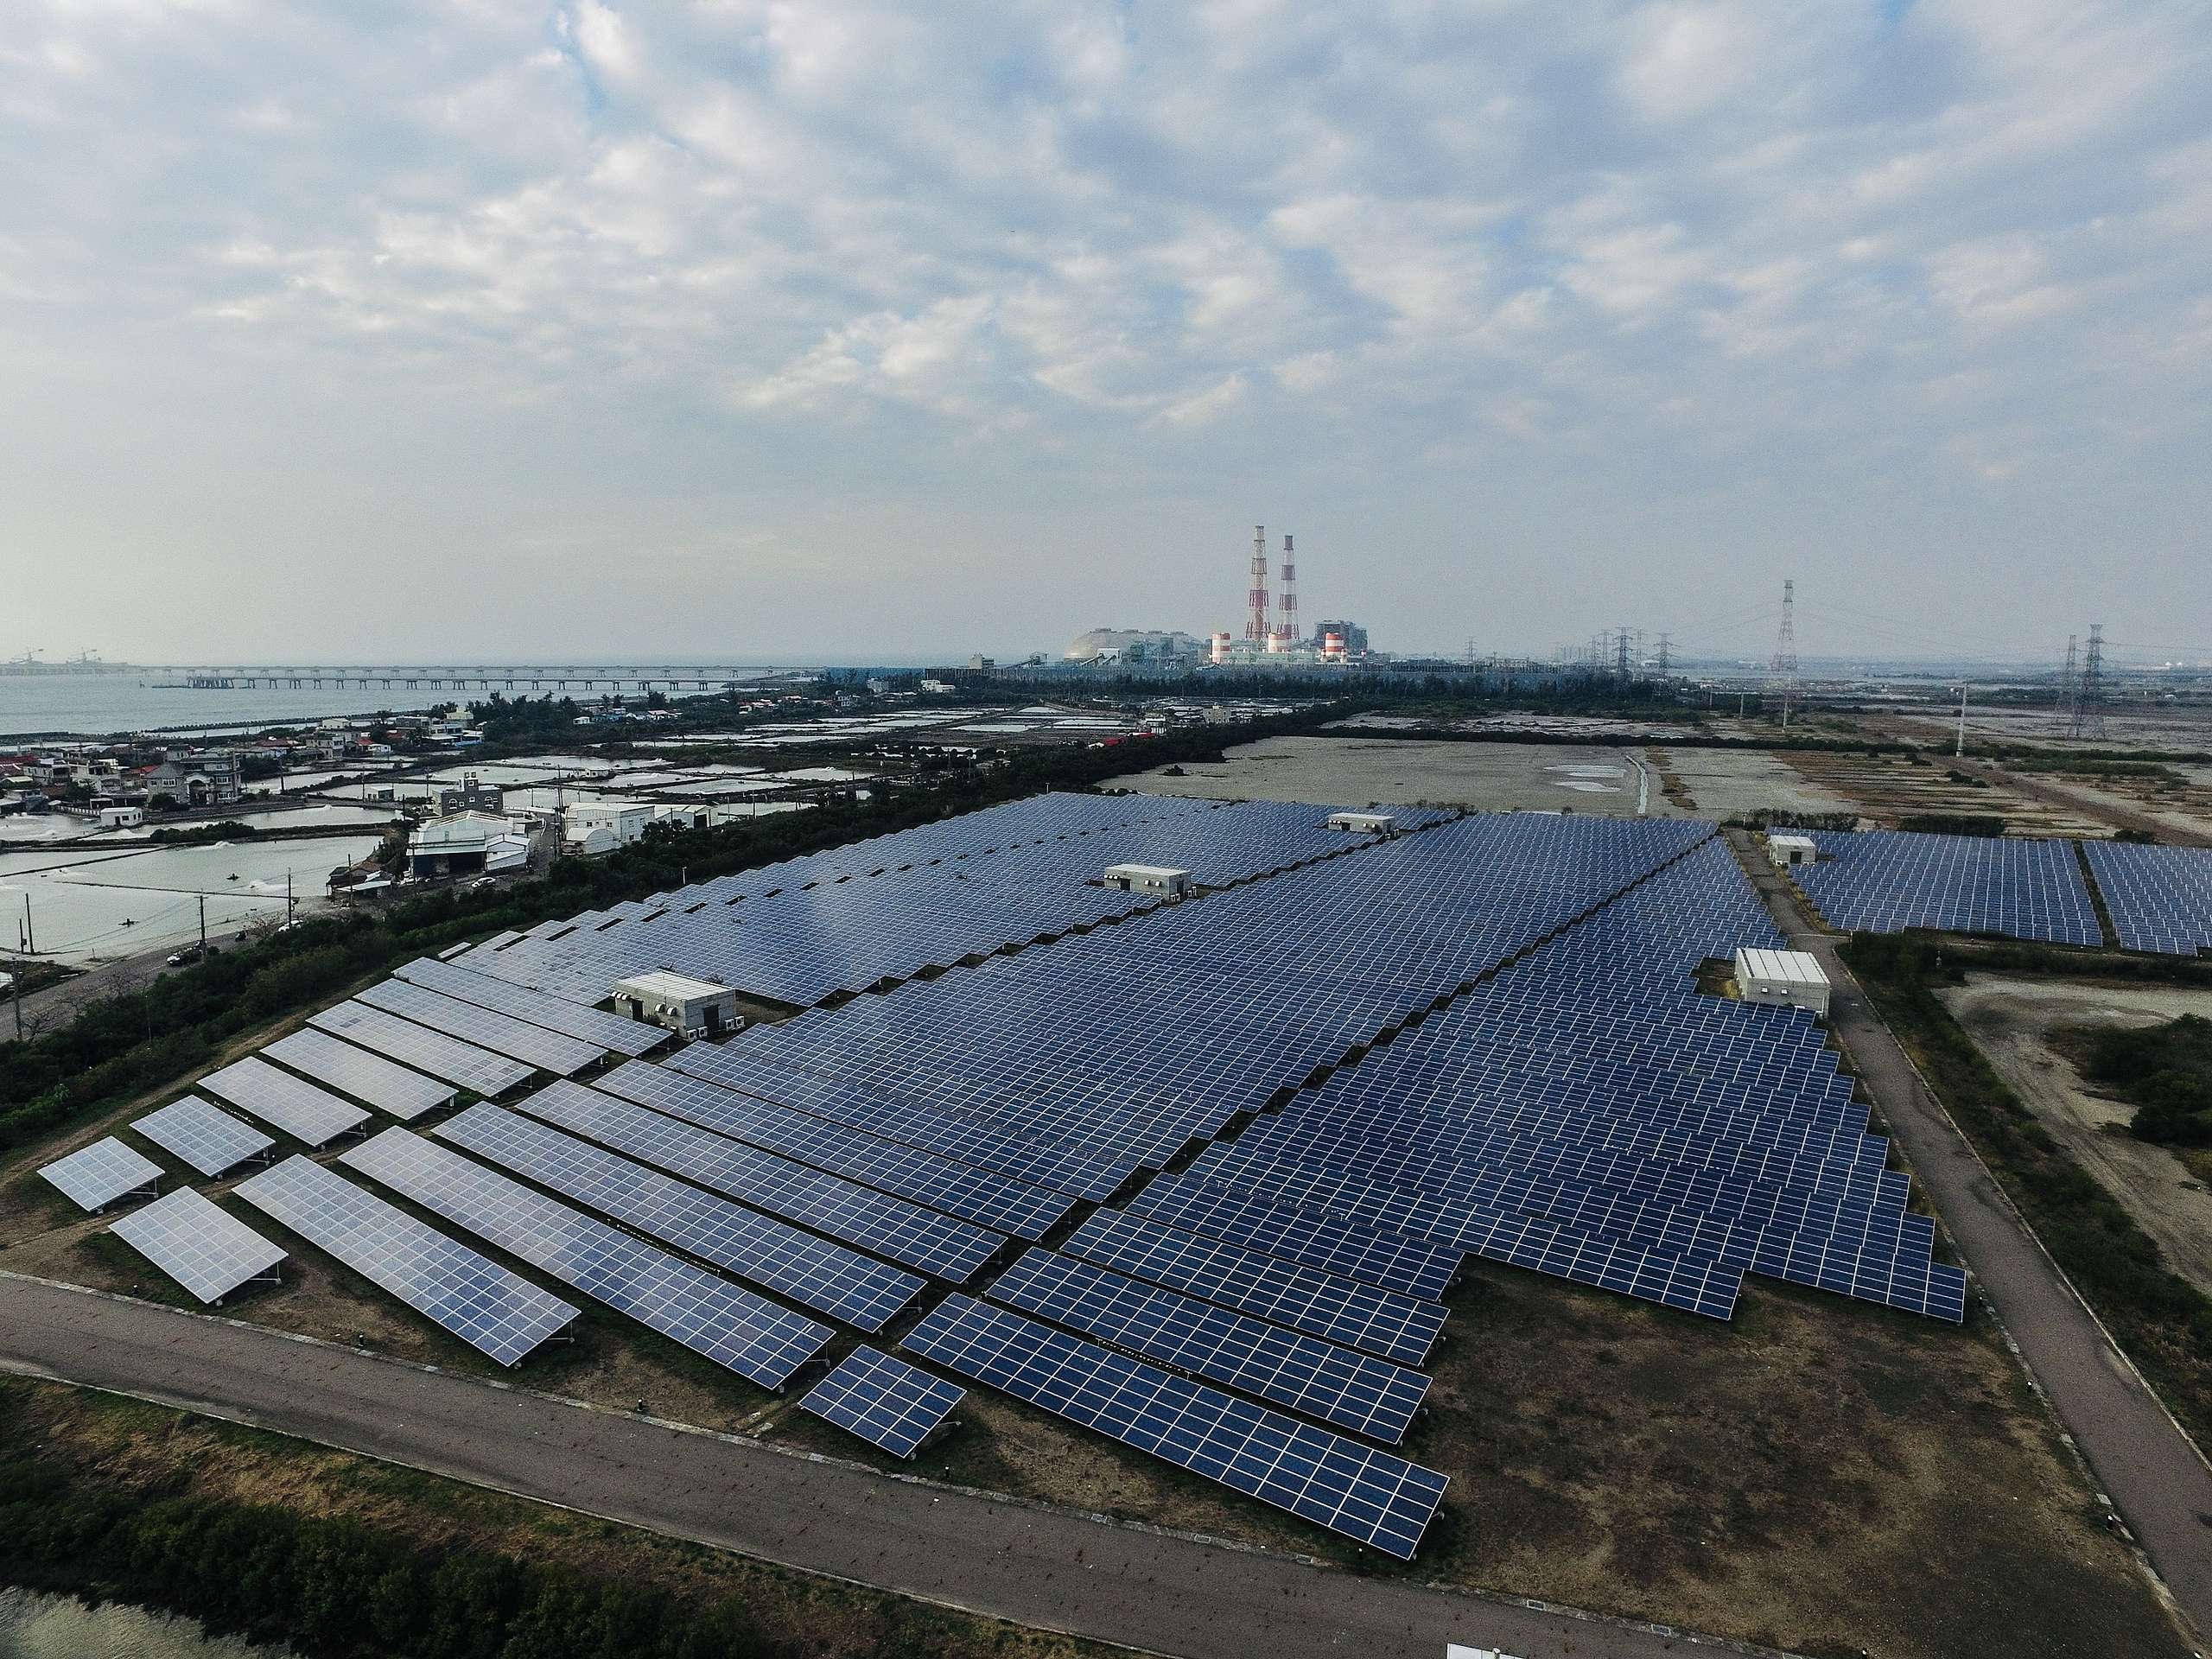 位於高雄興達鹽灘的太陽能發電廠，為全臺最大太陽能光電場，滿載發電量每小時約可發電4600度，全年總發電量約592萬度，大約可供應1600戶家庭用電。© Yung Jen Chen / Greenpeace